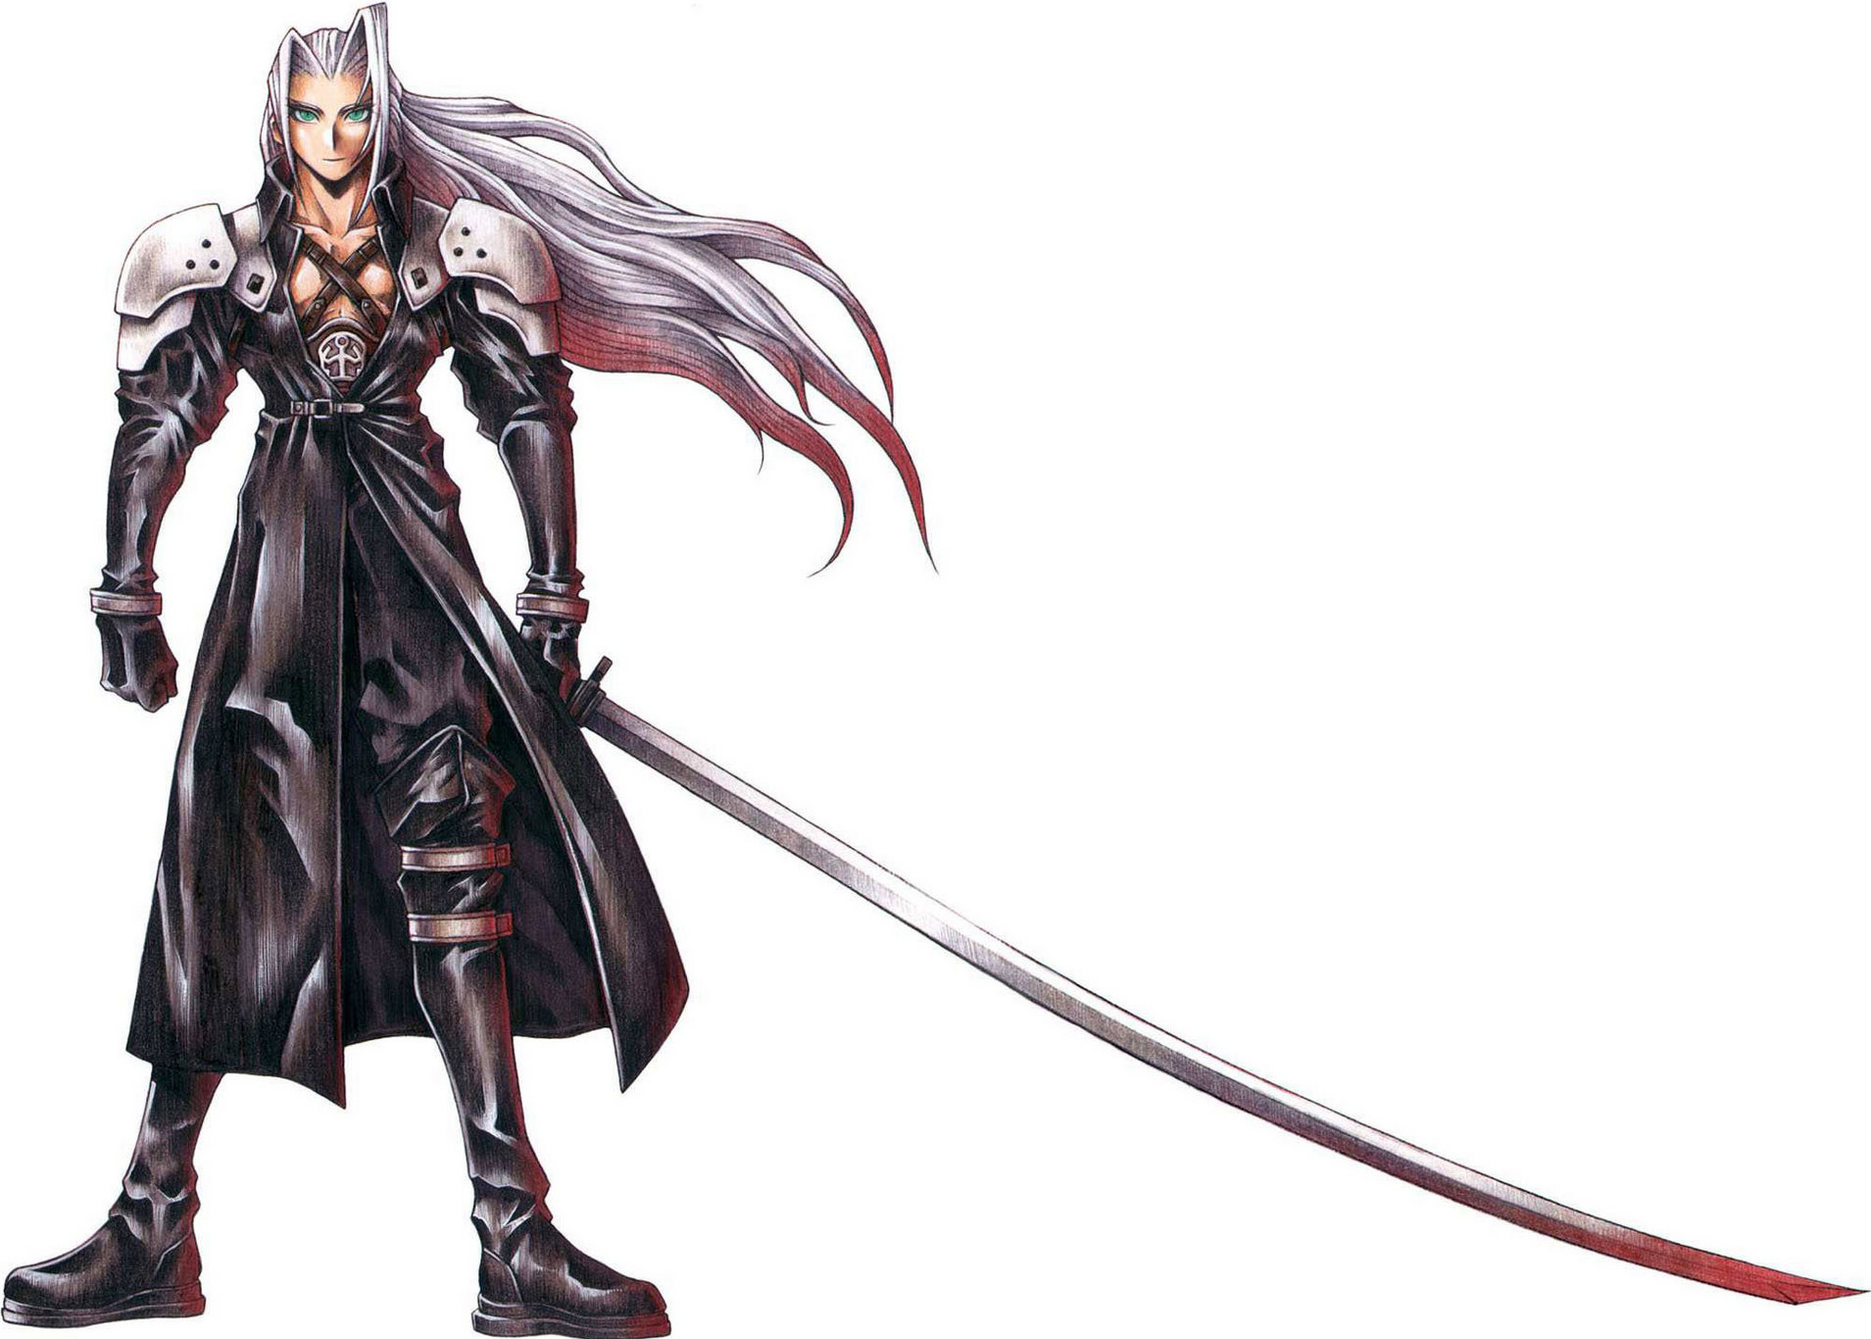 Hãy cùng khám phá Sephiroth - một trong những nhân vật quan trọng và đầy ấn tượng trong thế giới Final Fantasy. Với thiết kế độc đáo và khả năng chiến đấu siêu việt, Sephiroth chắc chắn sẽ thu hút sự chú ý của bạn!